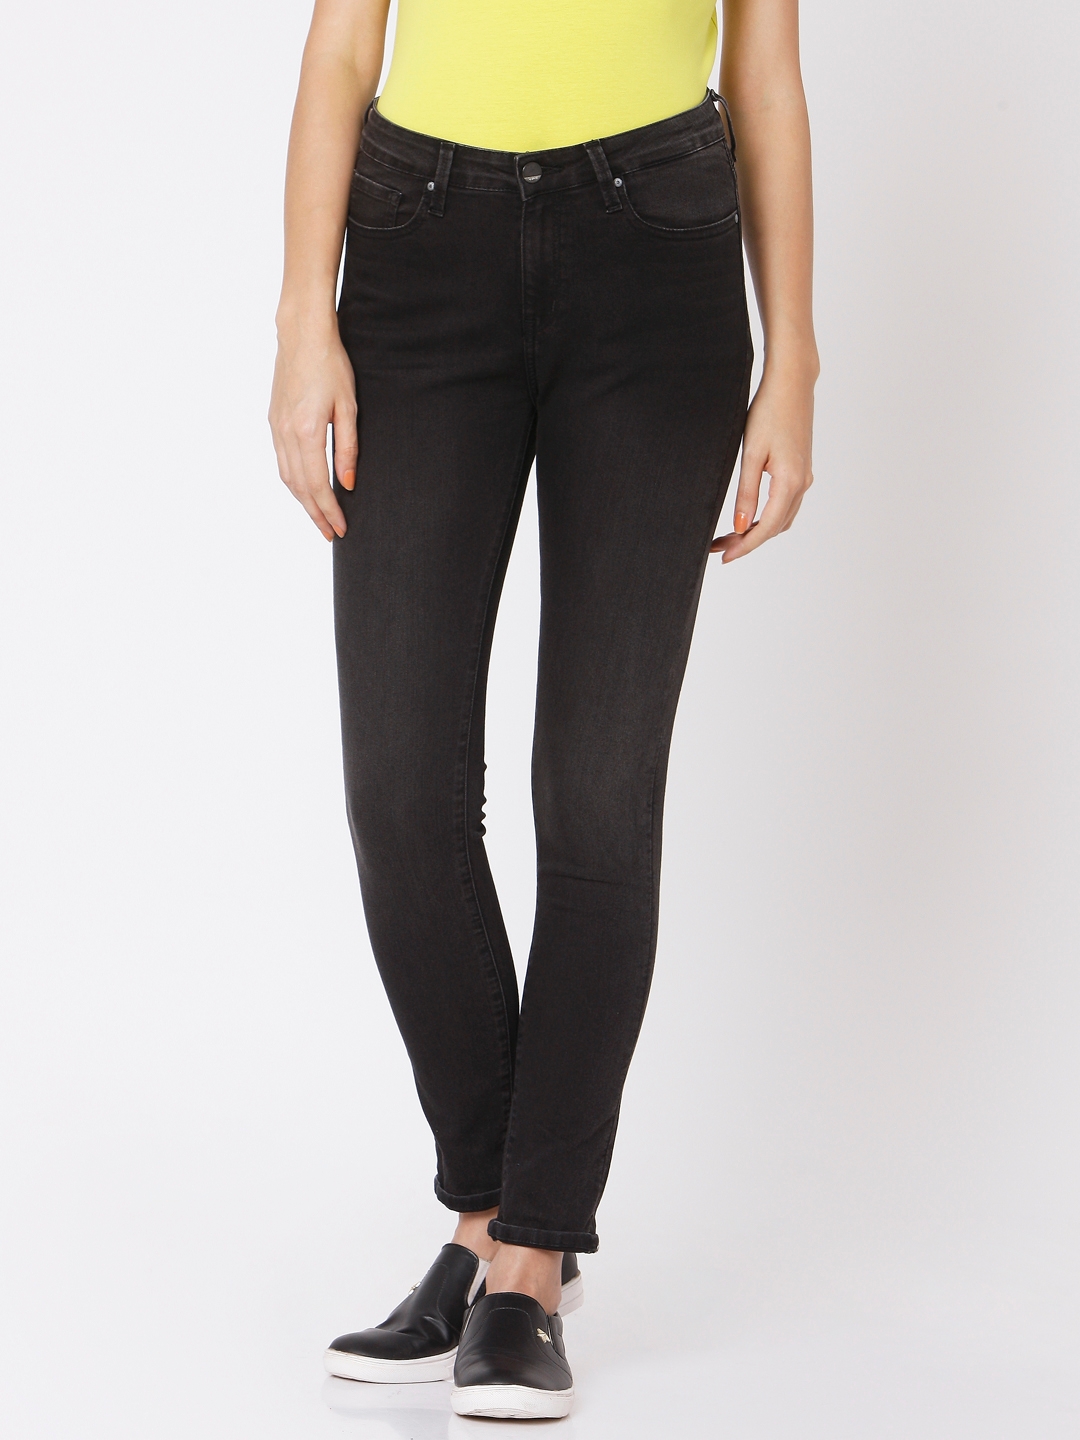 Spykar | Spykar Black Cotton Skinny Fit Regular Length Jeans For Women